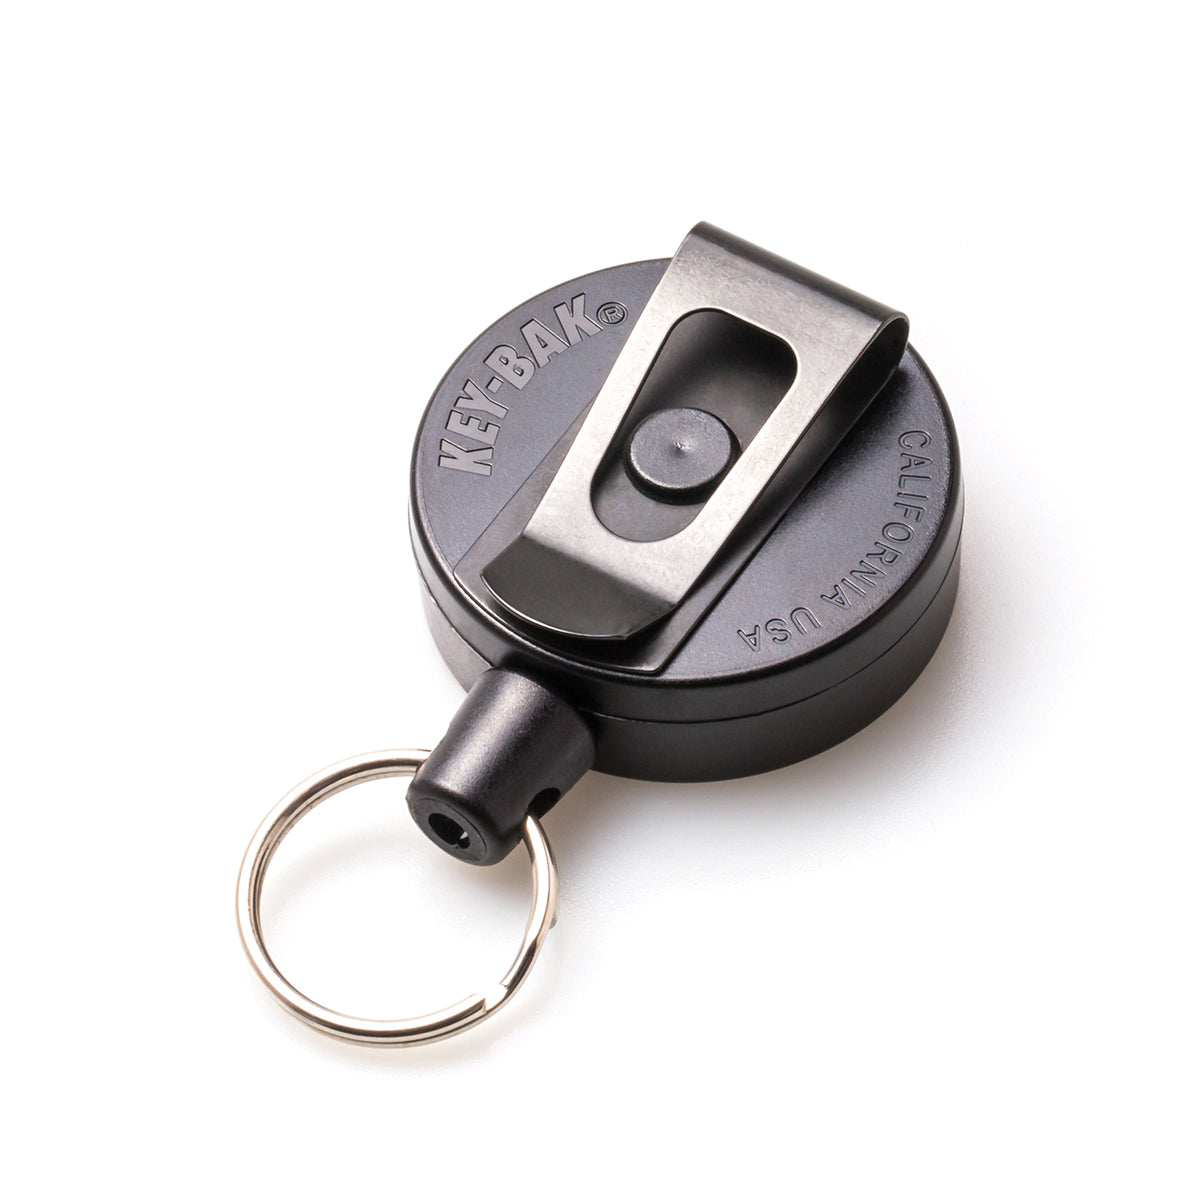 MID6-Duo Heavy Duty Badge Reel and Keychain Holds 10 Keys – KEY-BAK